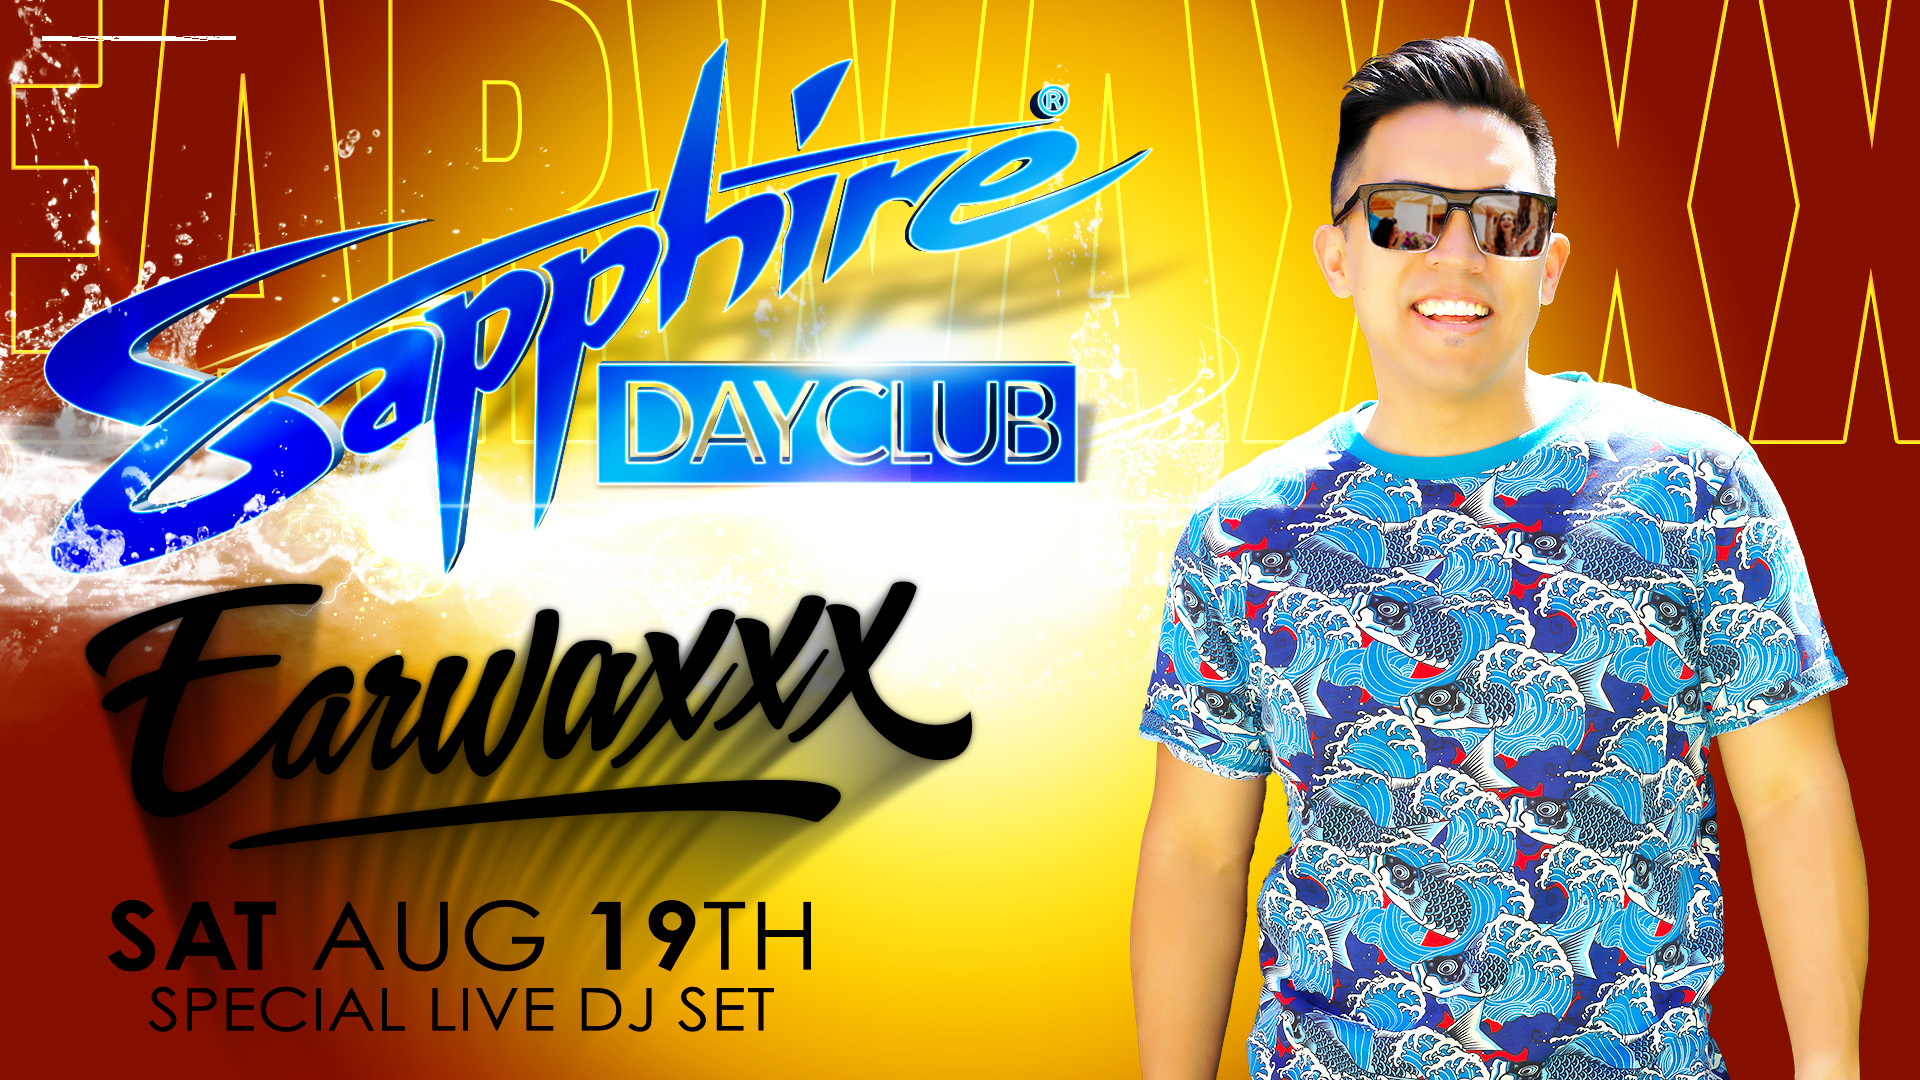 DJ Earwaxxx at Sapphire